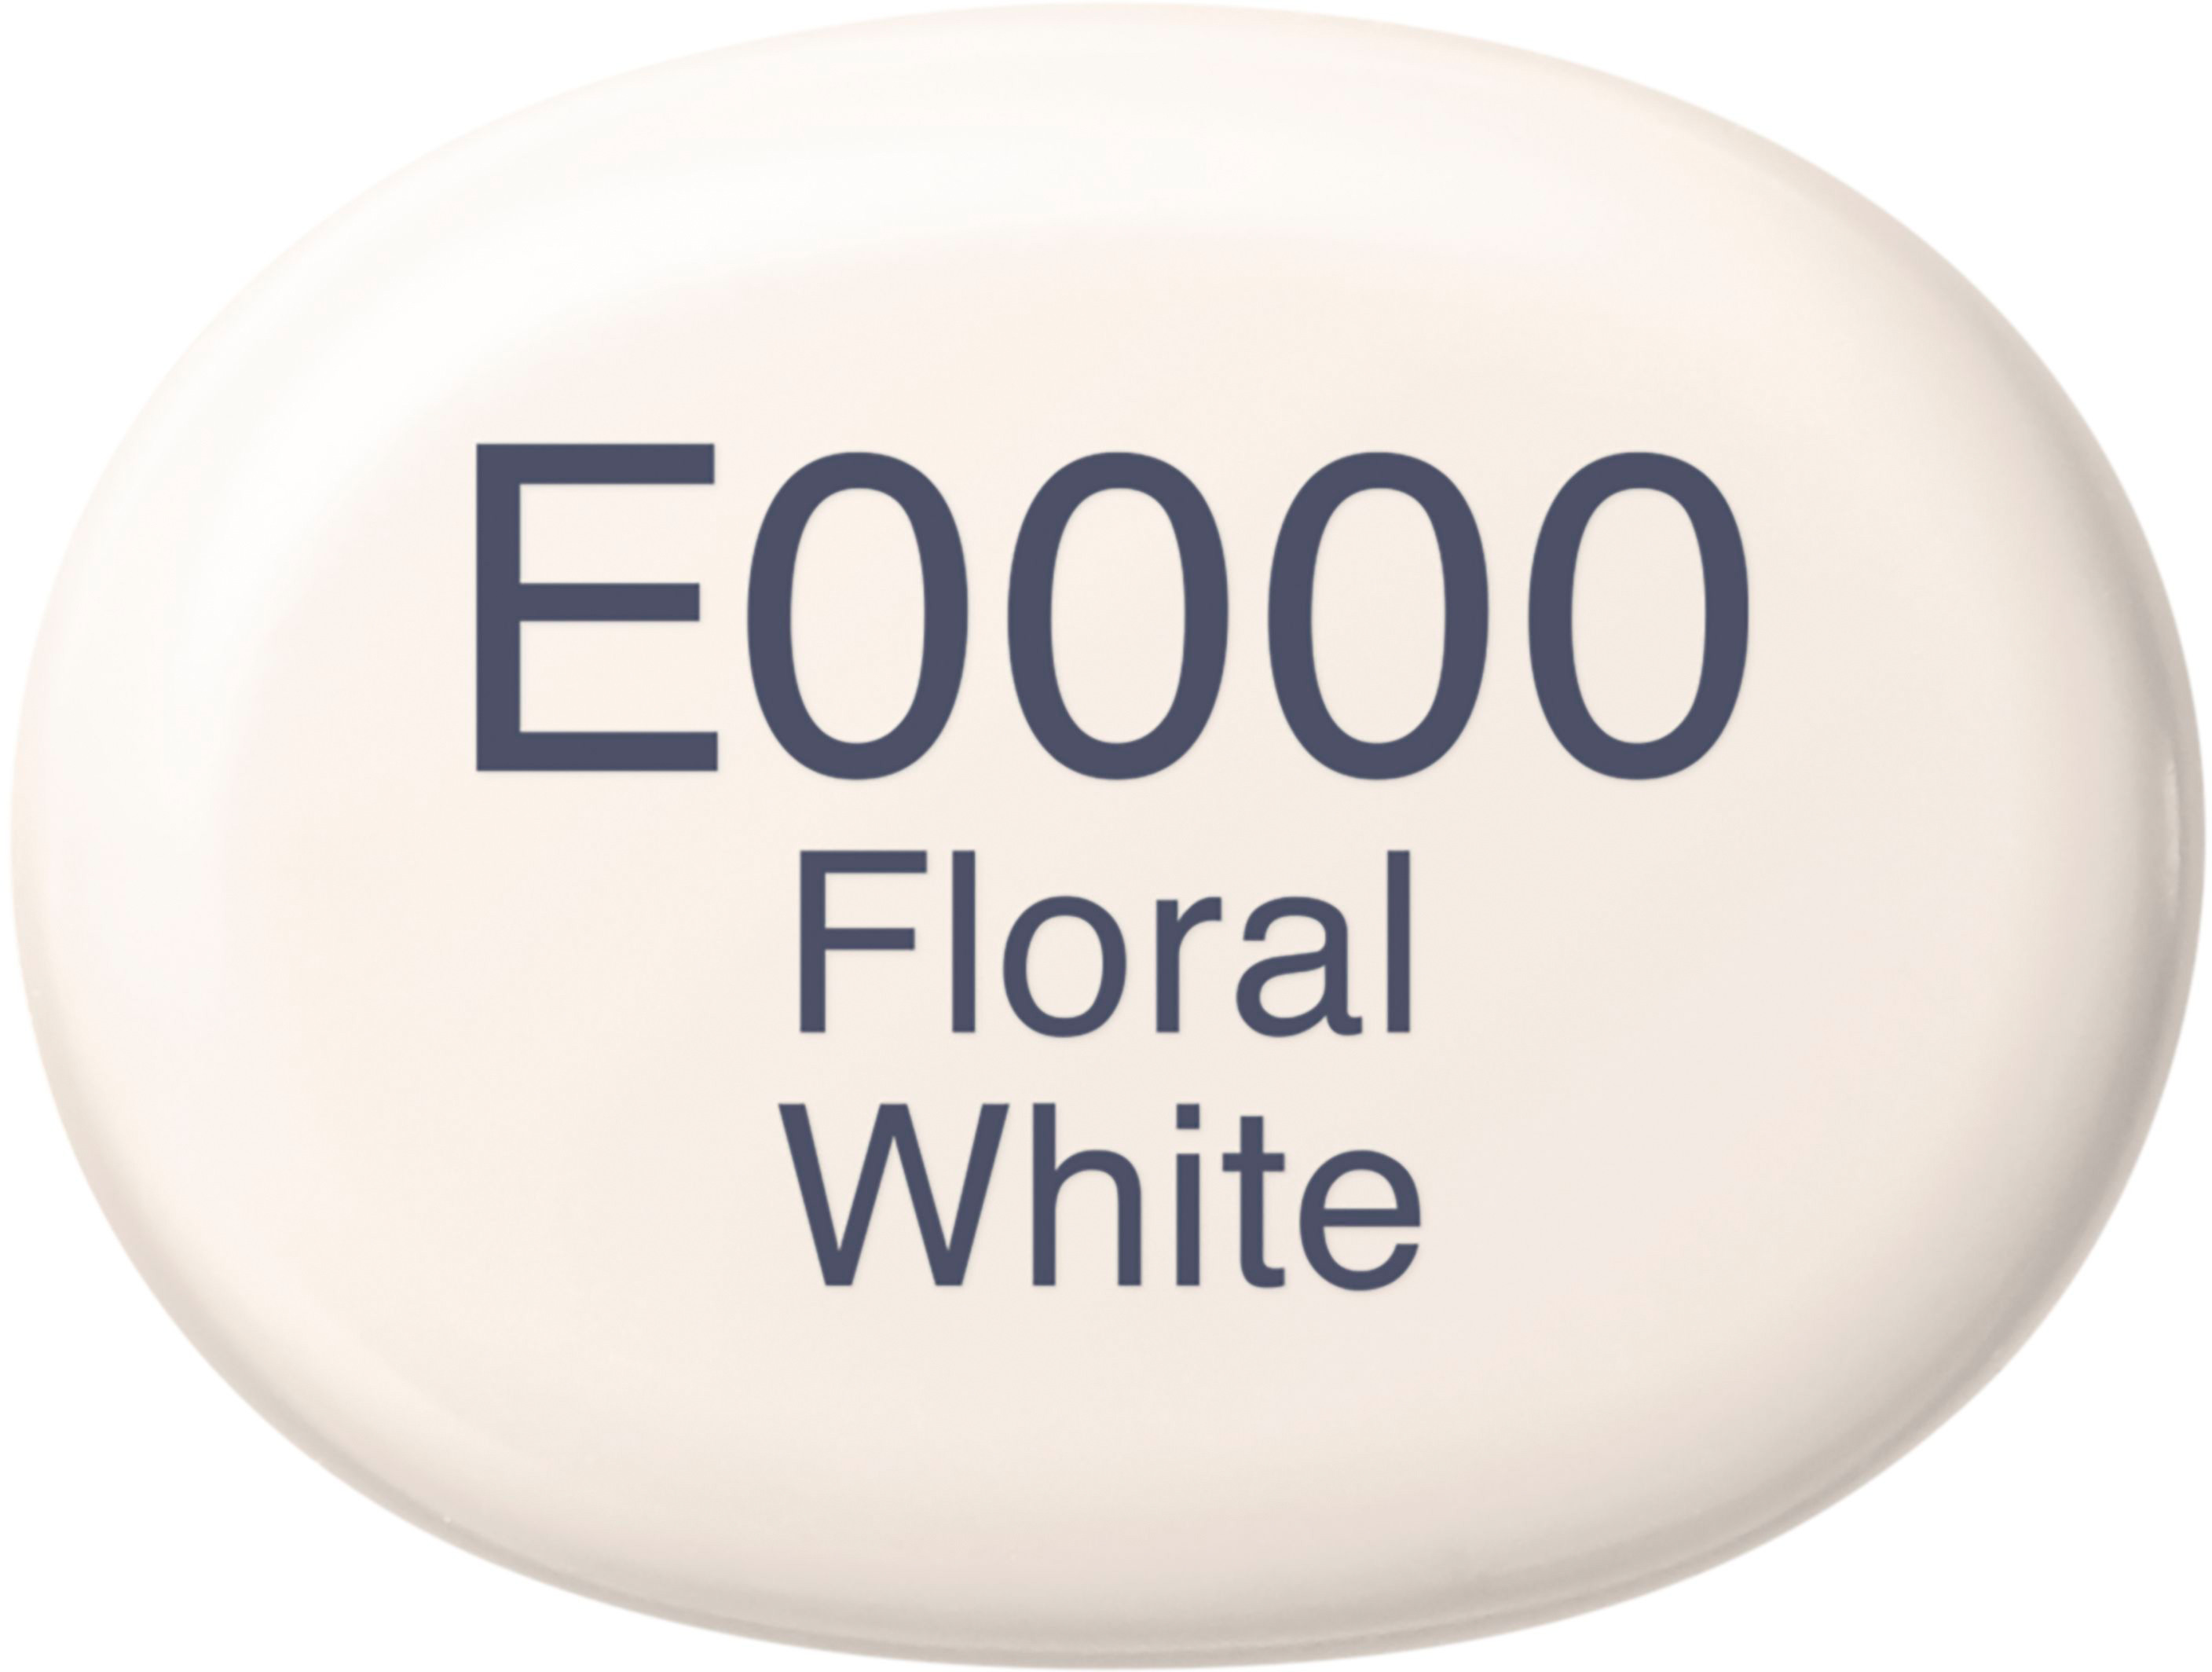 COPIC Marker Sketch 21075323 E0000 - Floral White